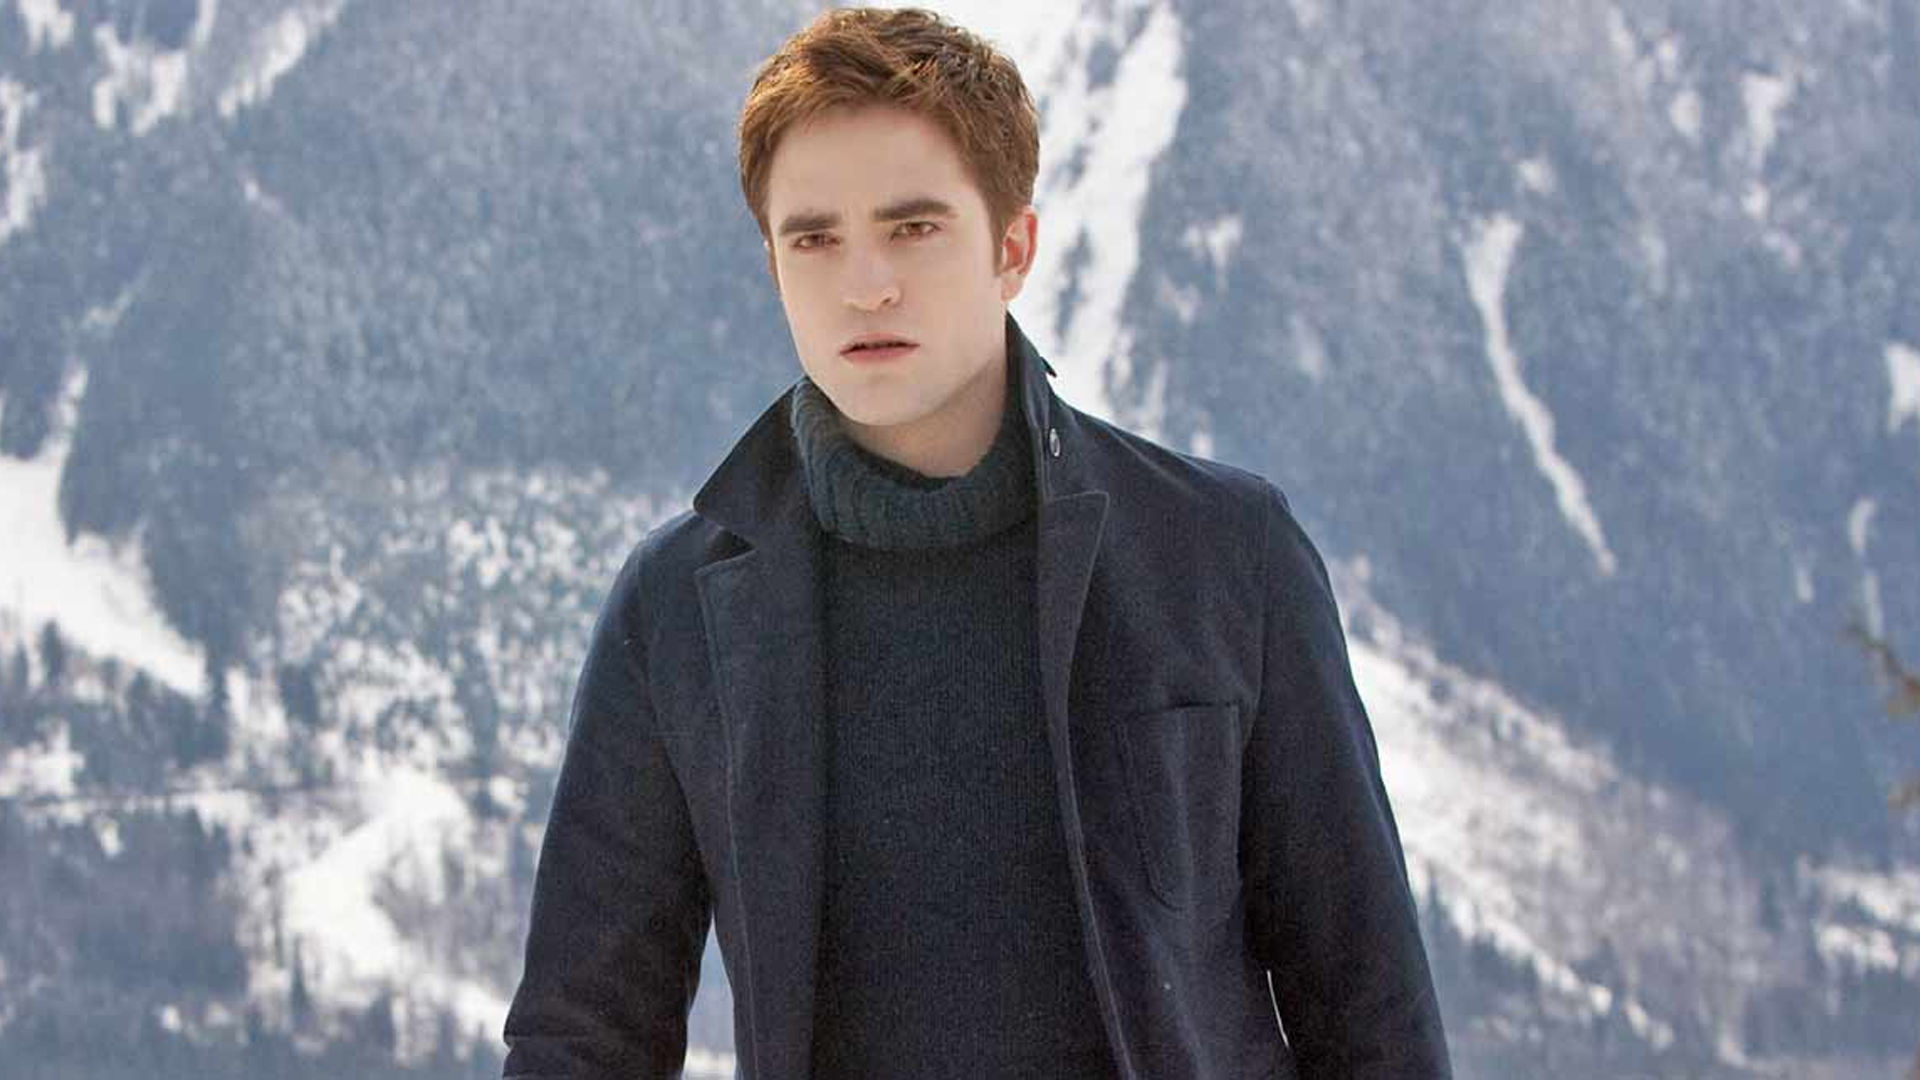 Edward caminando en la nieve